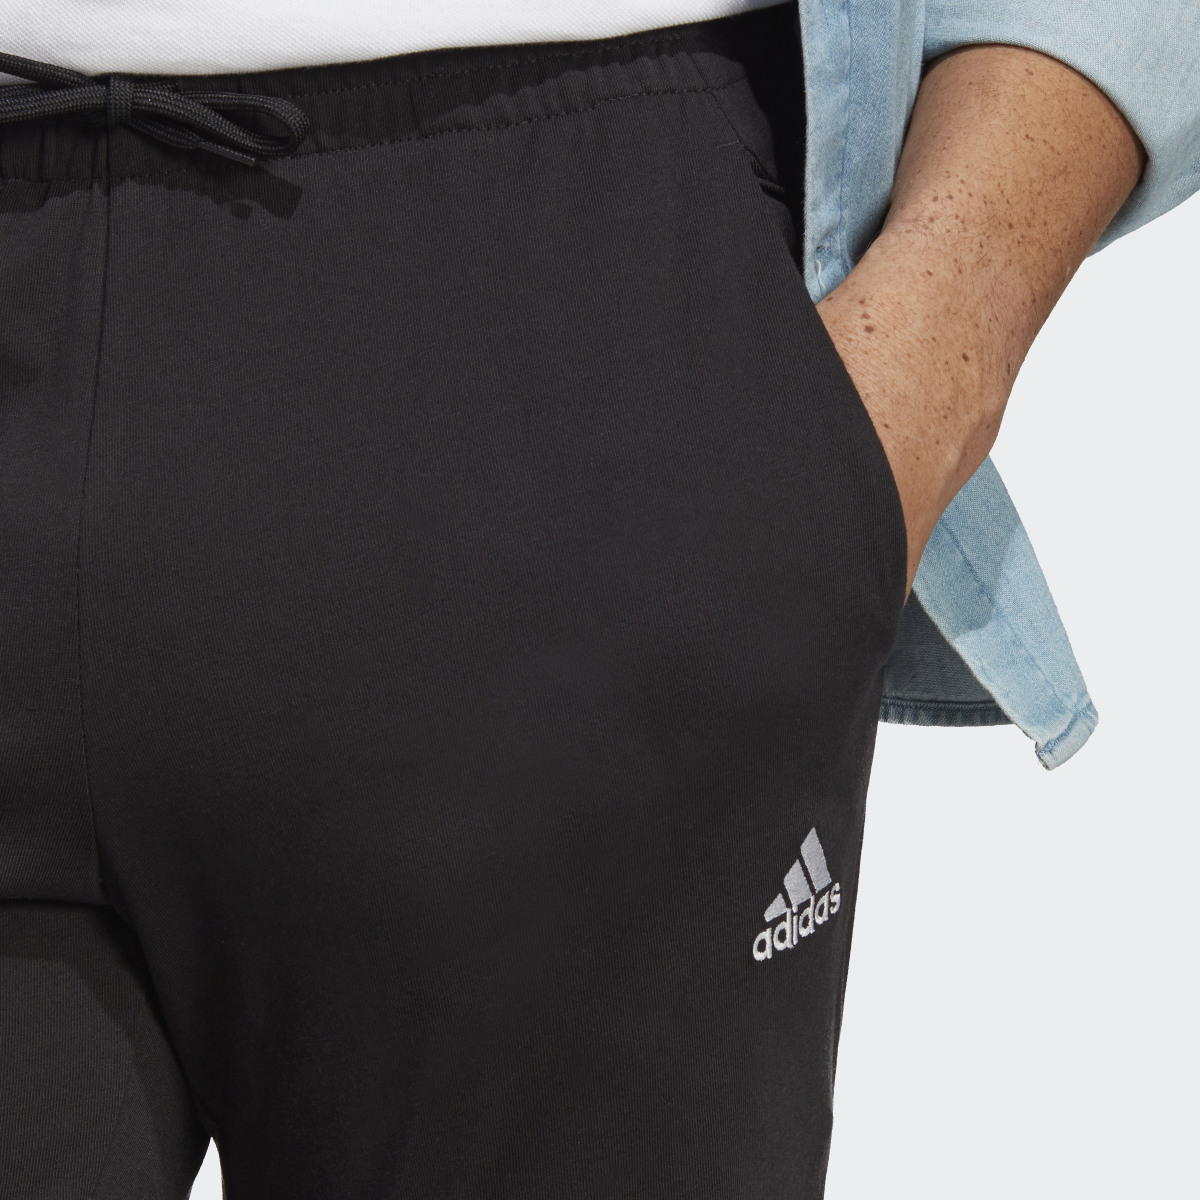 Adidas Pantalon fuselé élastique en jersey avec logo Essentials. 5